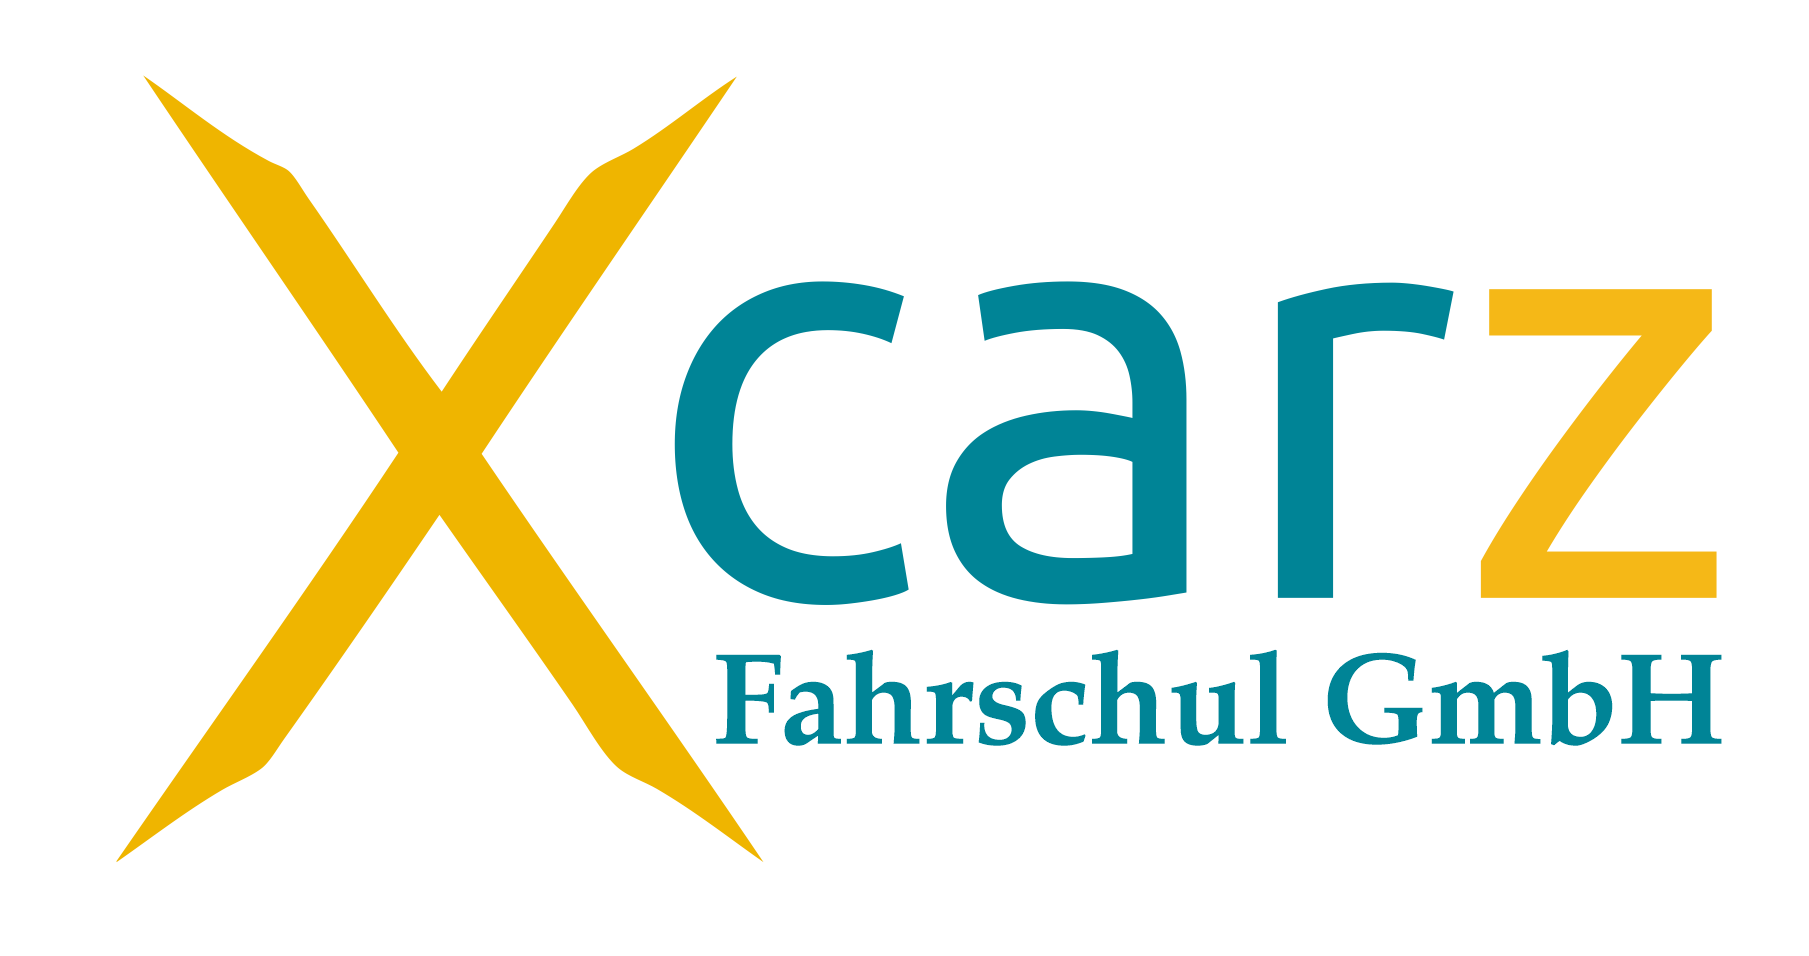 Xcarz Fahrschul GmbH